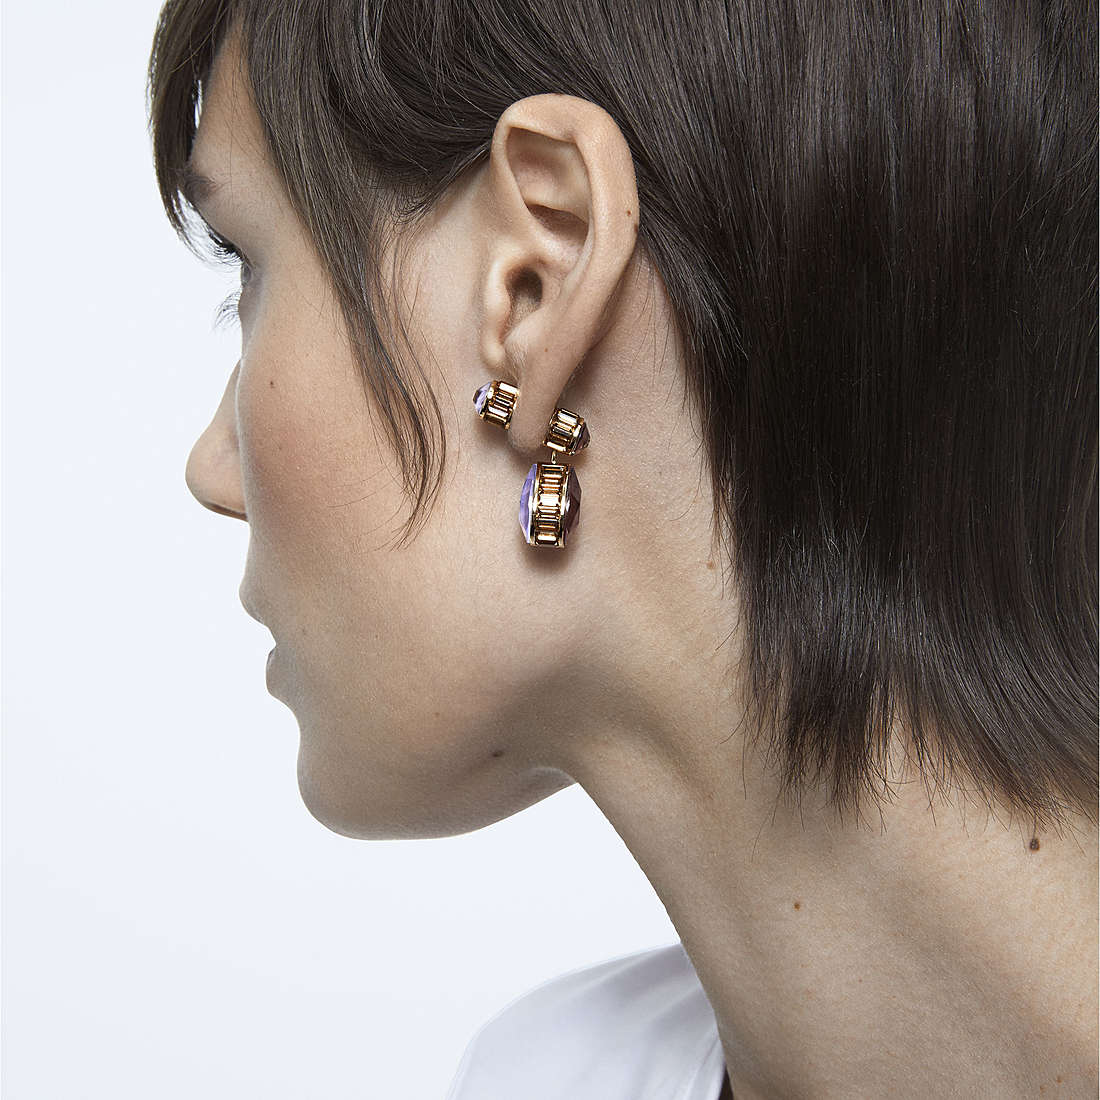 Swarovski earrings Orbita woman 5600523 wearing